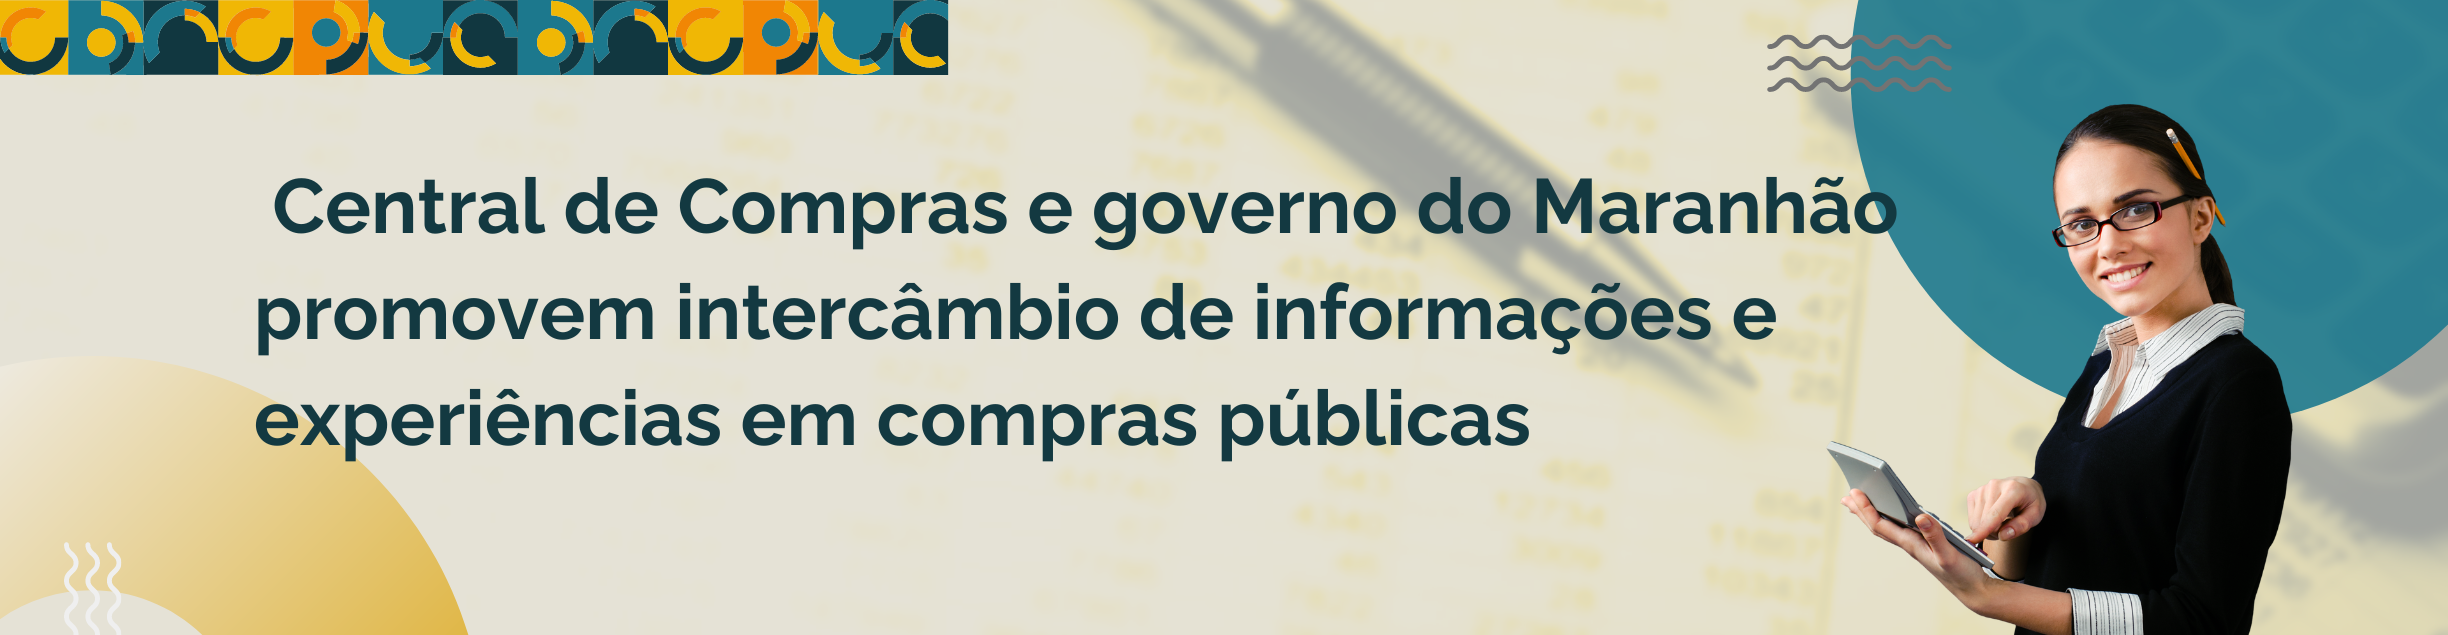 Central de Compras e governo do Maranhão promovem intercâmbio de informações e experiências em compras públicas